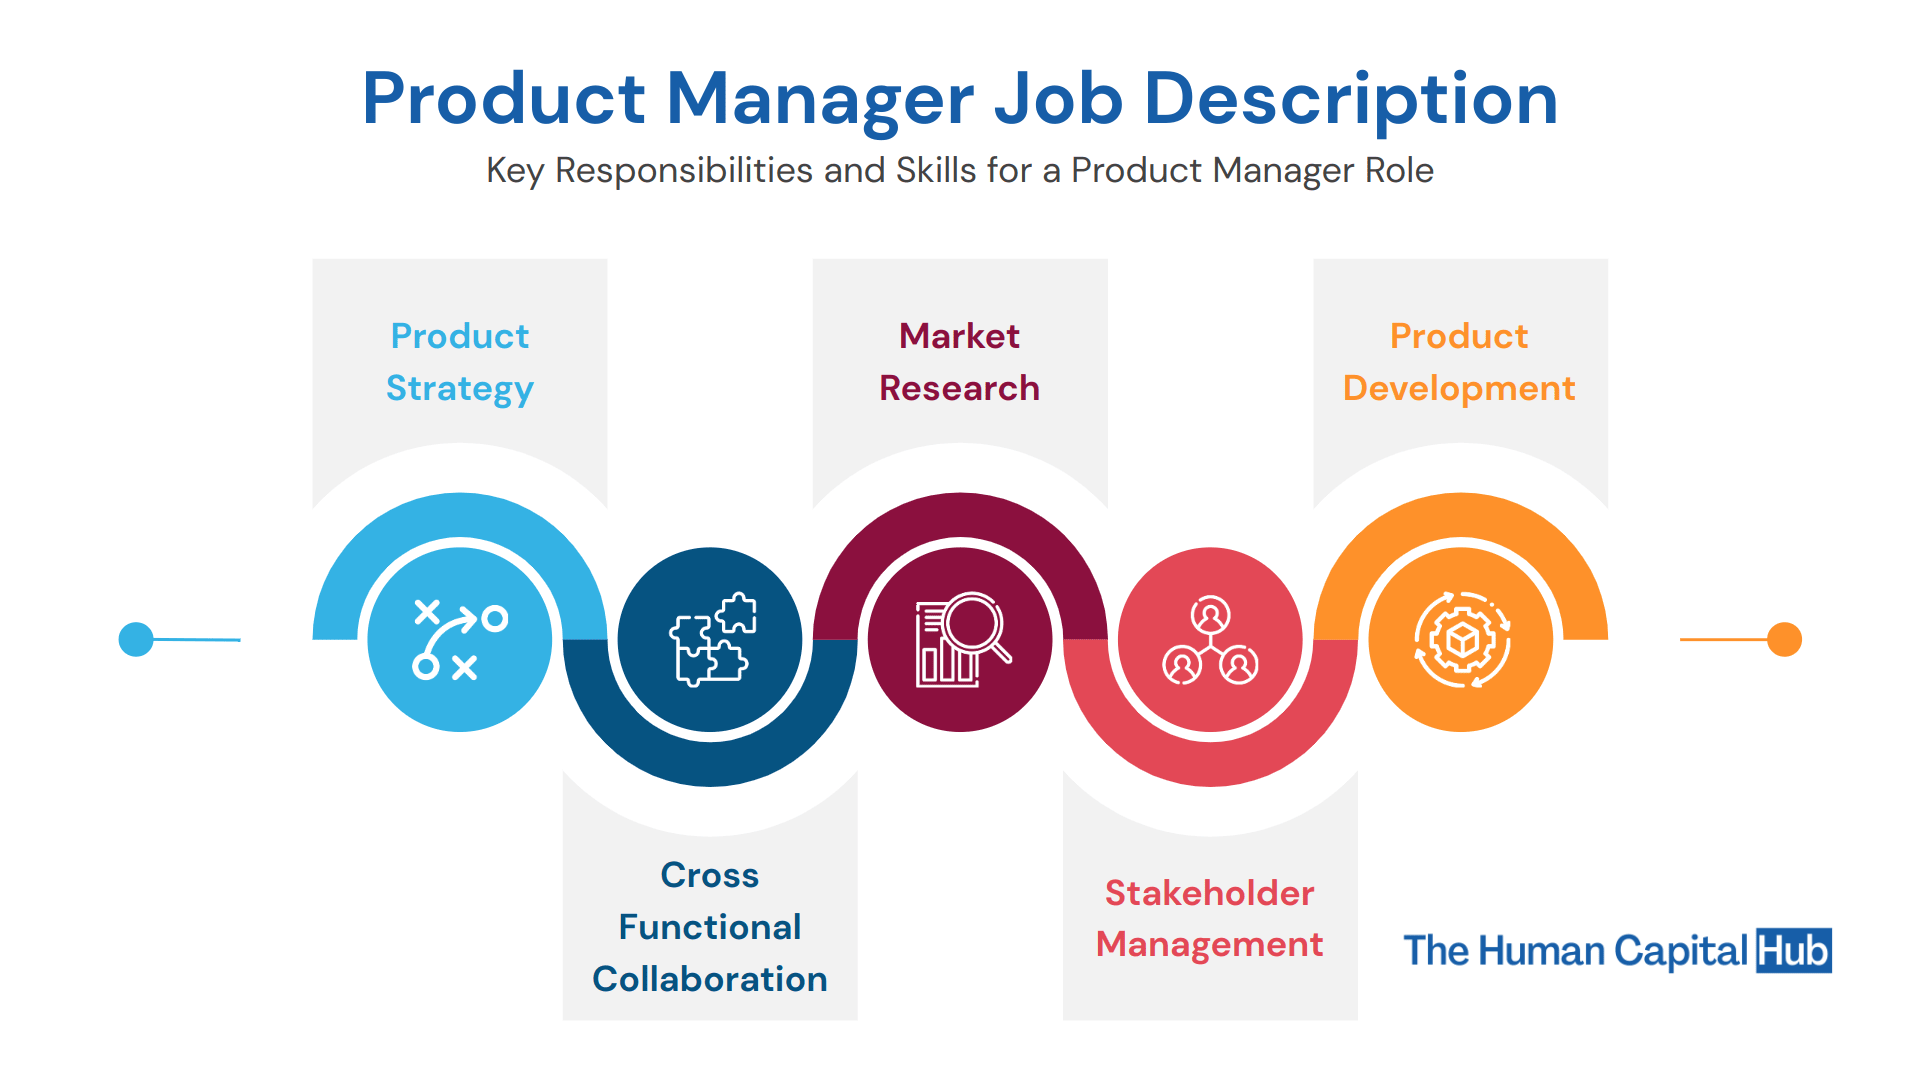 Product Manager Job Descriptions